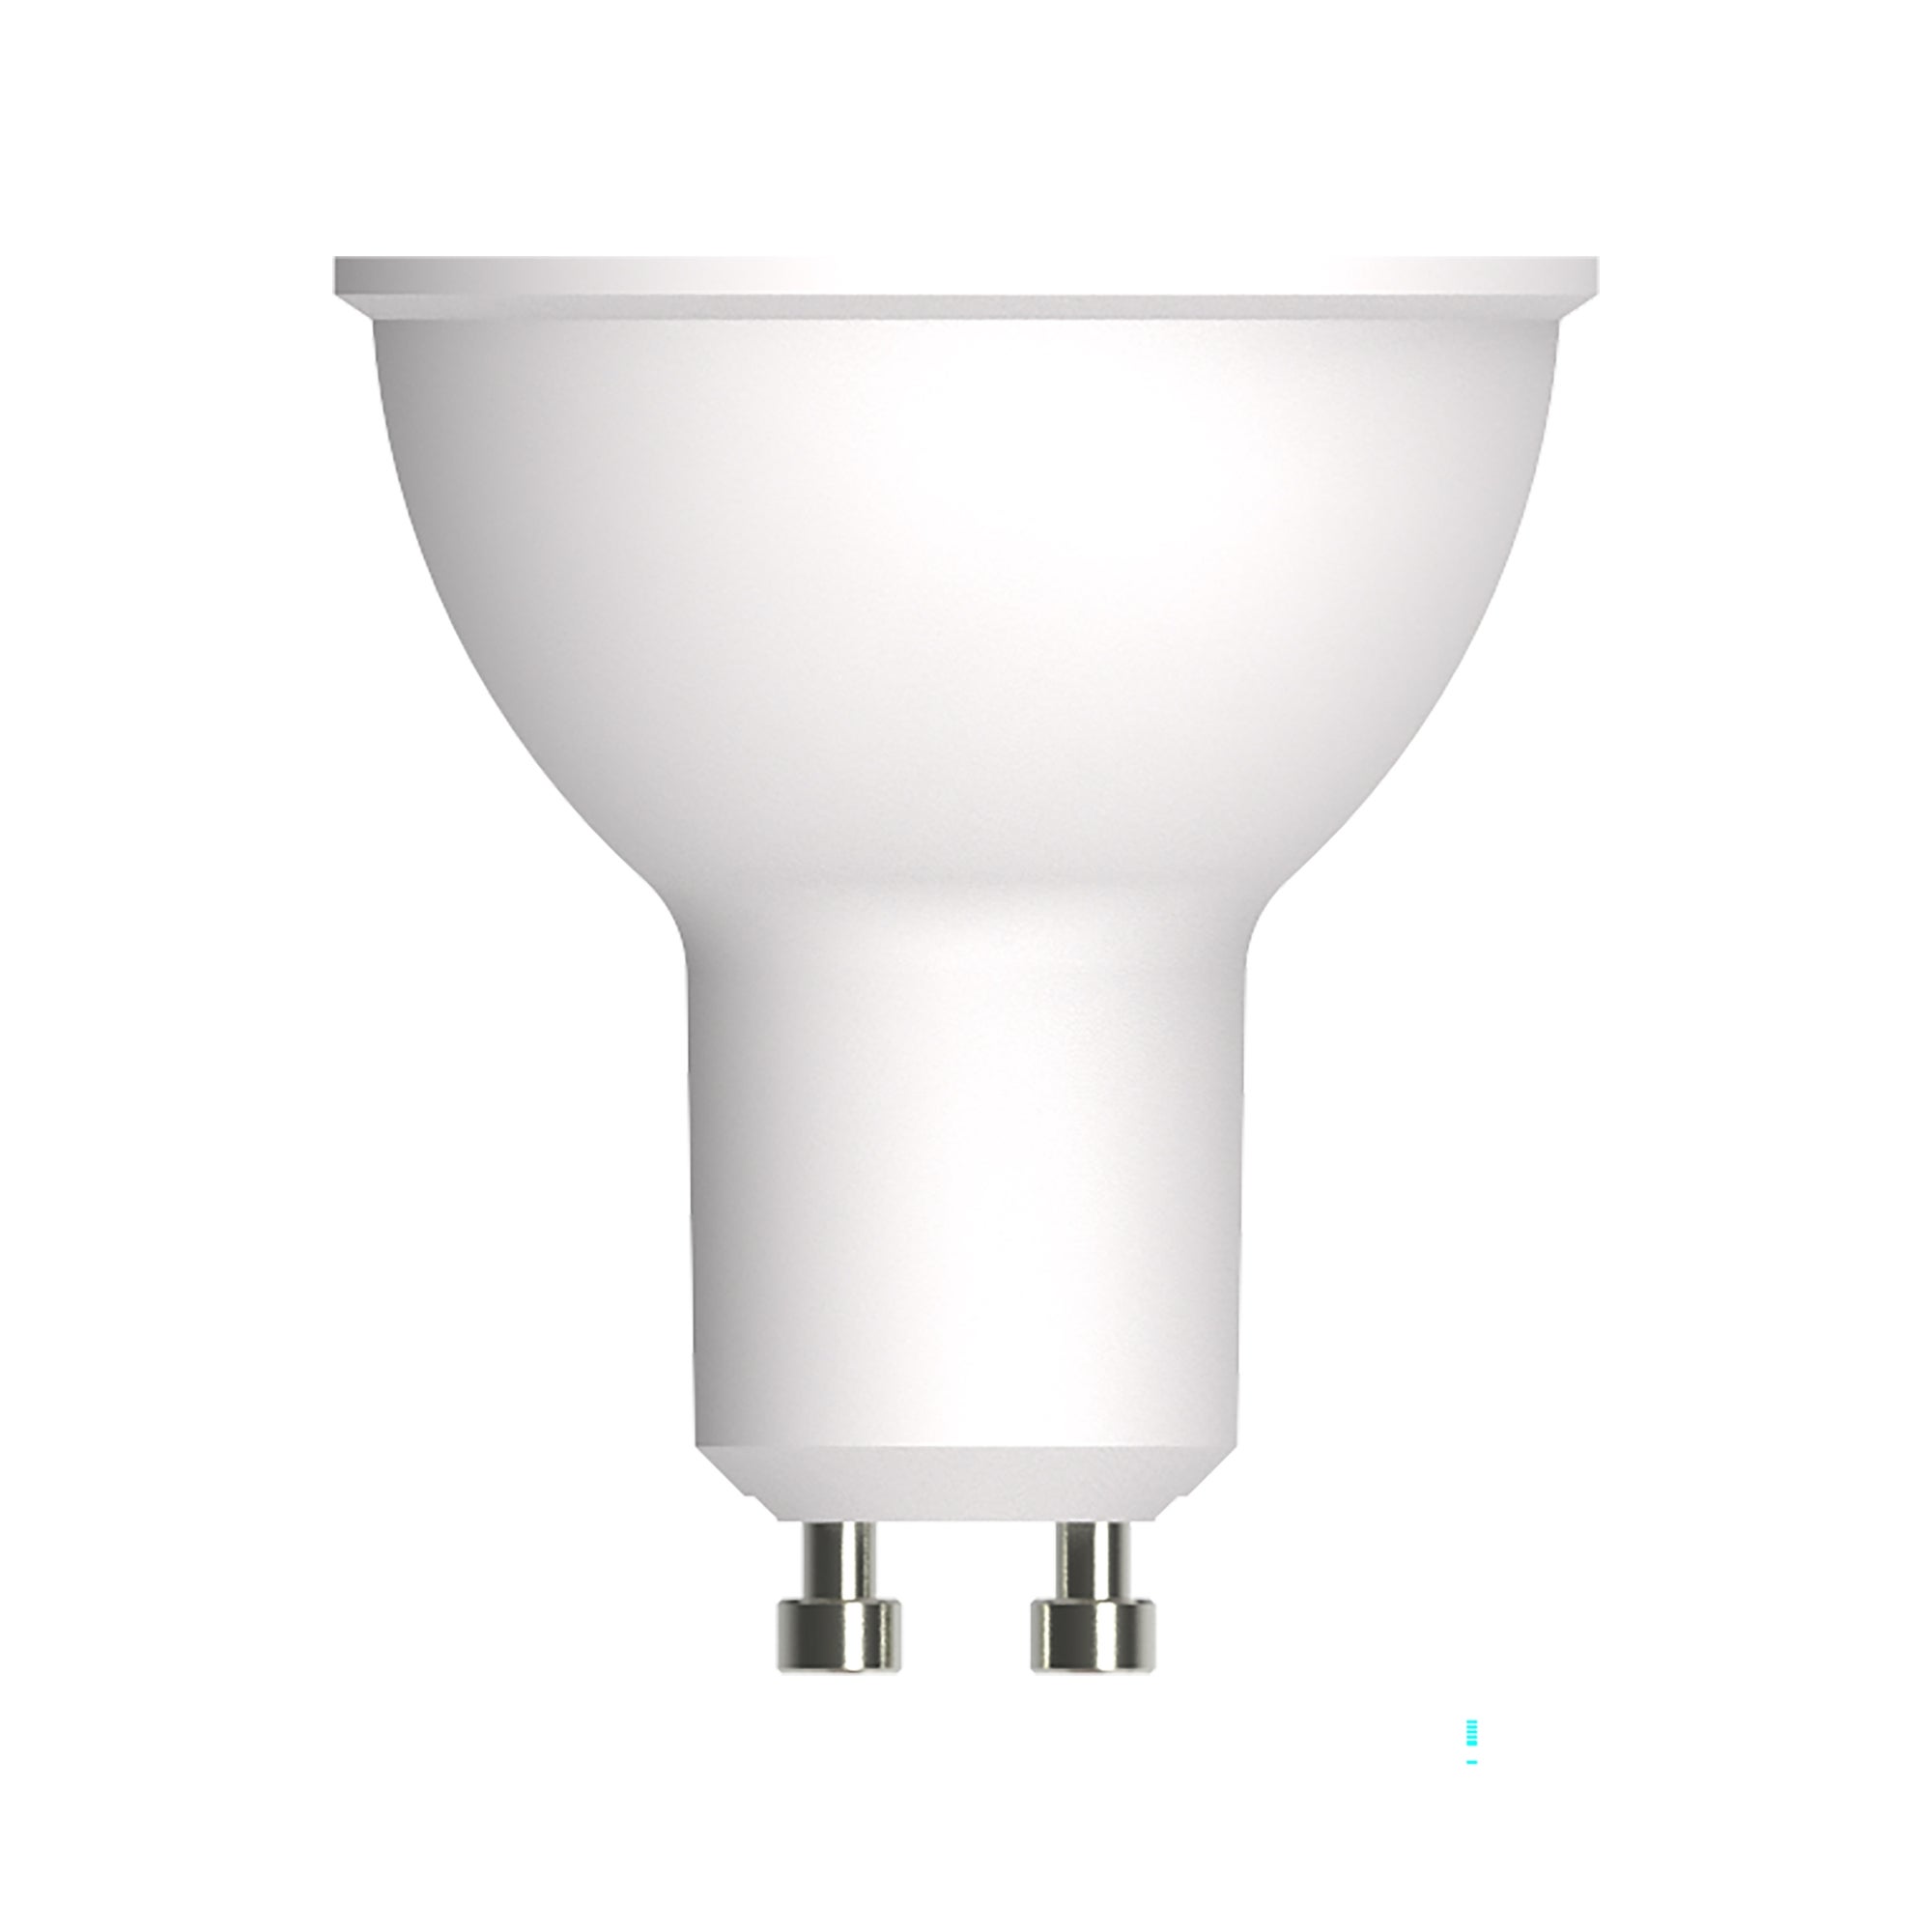 V-TAC Ampoules LED GU10-4,5W 400 Lumen Lot de 3 Blanc Froid 6500K - Spot LED GU10 pour une efficacité maximale et une économie d'énergie 